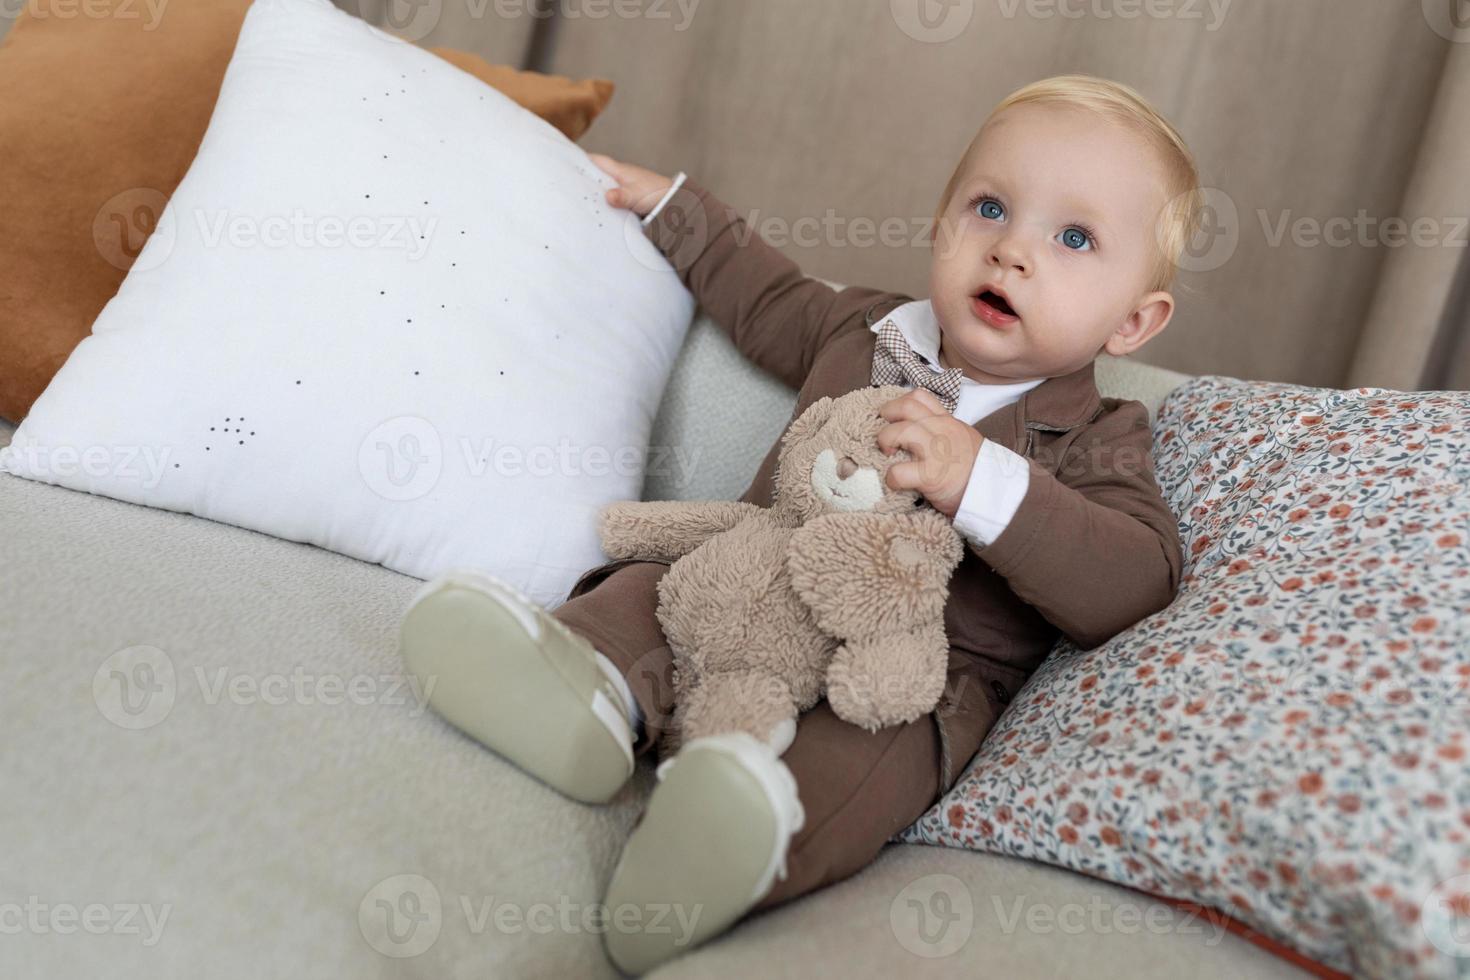 kleiner junge in stilvoller geschäftskleidung mit einem spielzeug sitzt auf einem weichen sofa foto